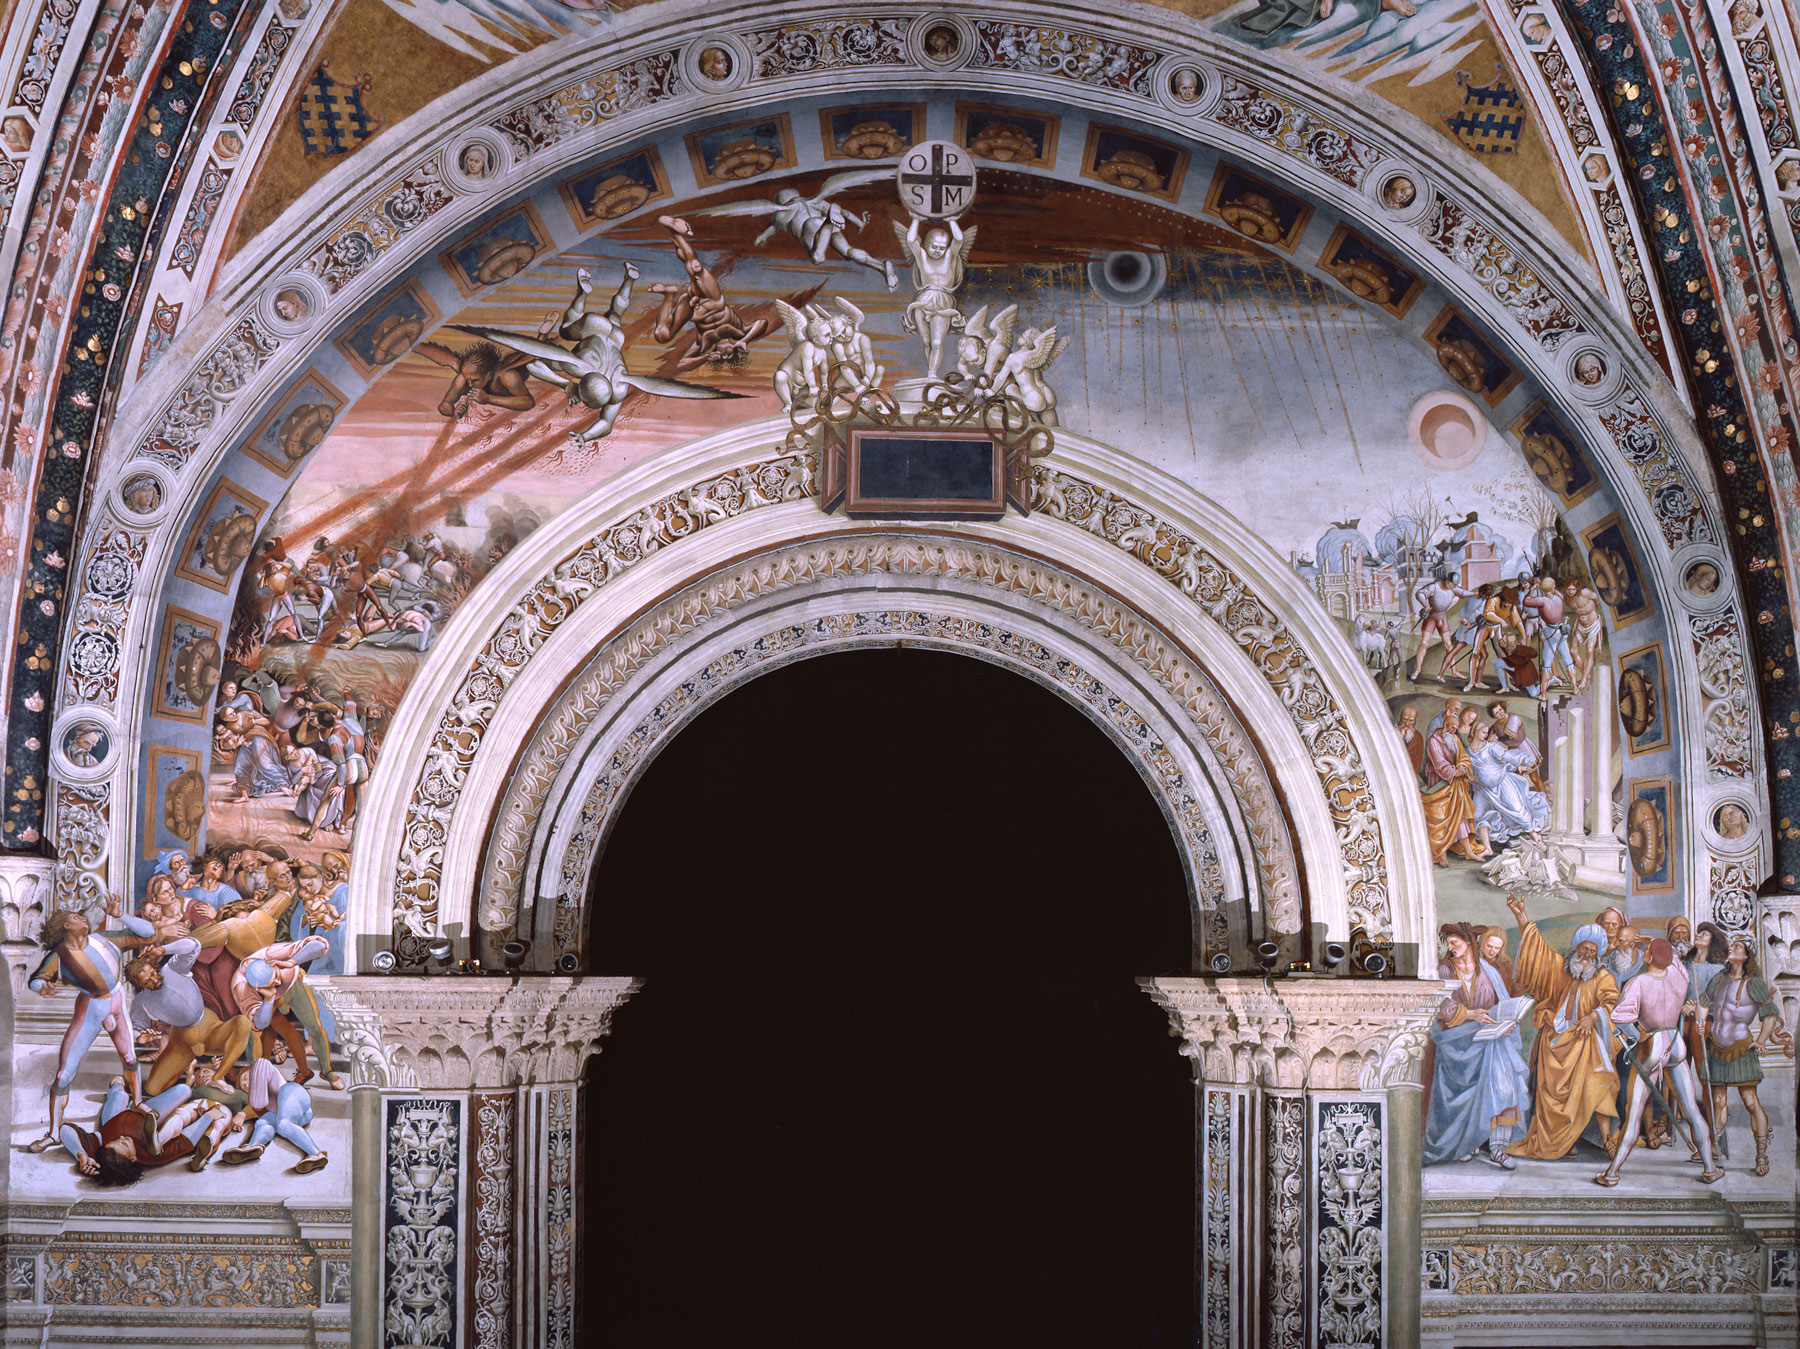 Luca Signorelli, Il Finimondo (1499- 1504; affresco; Orvieto, Duomo, Cappella Nova)
